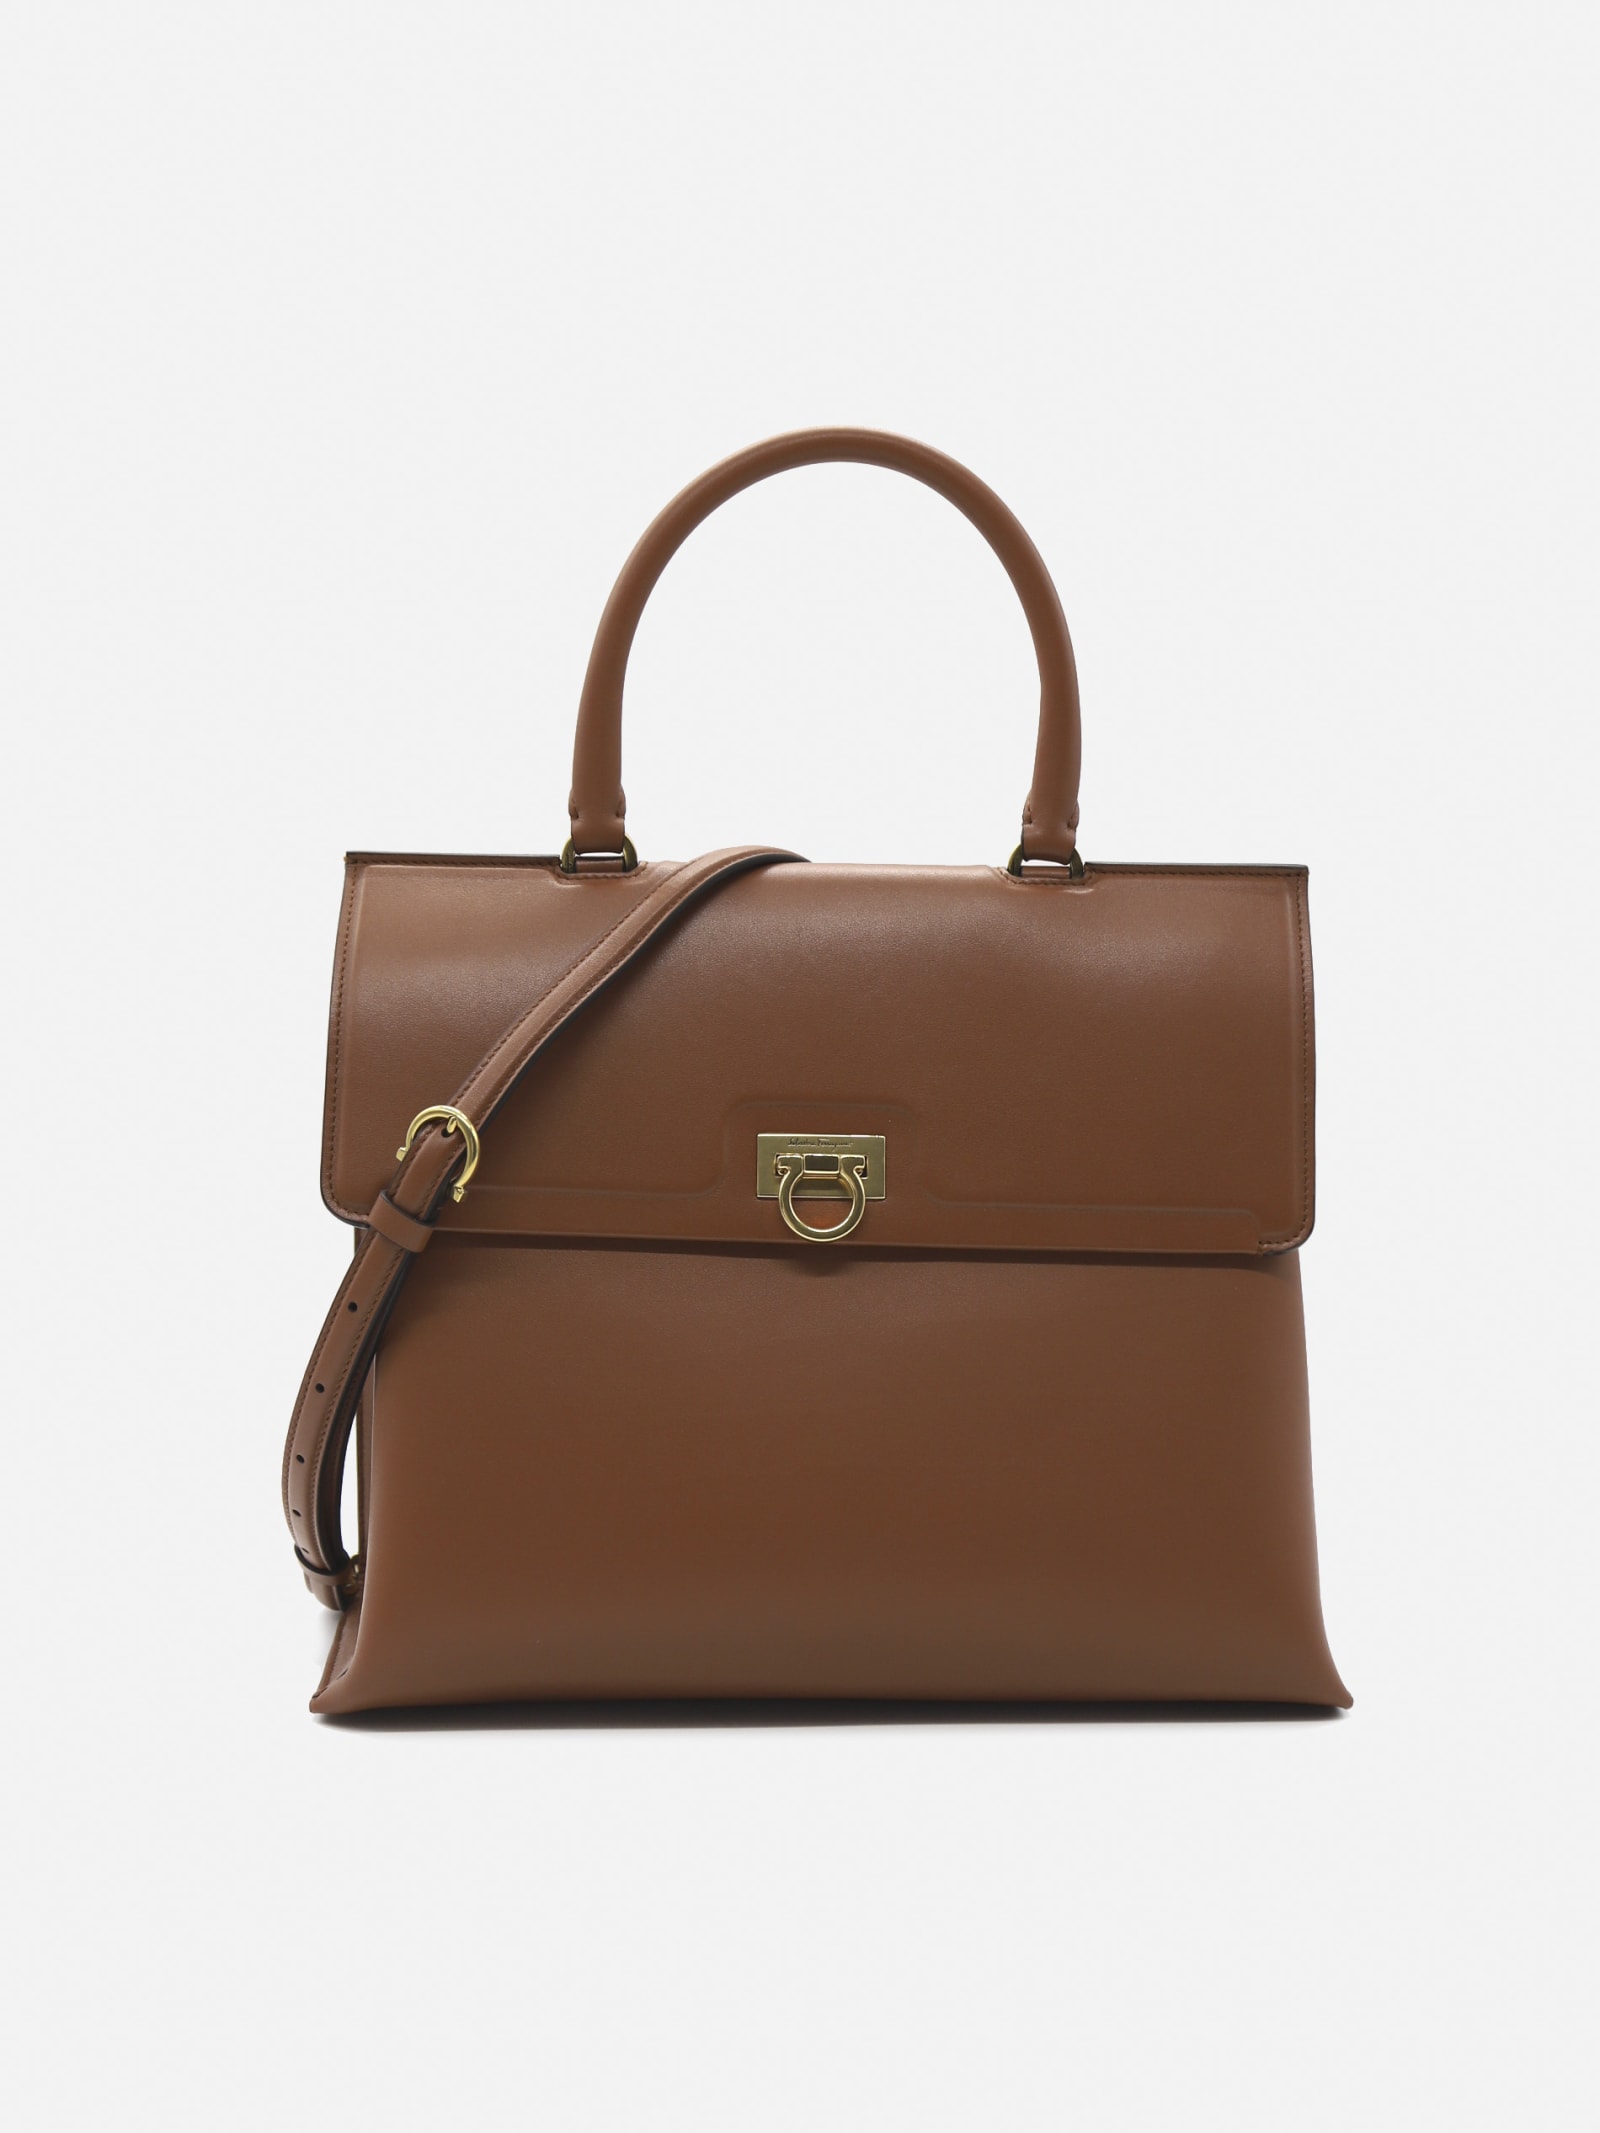 Salvatore Ferragamo Trifolio M Handbag In Leather